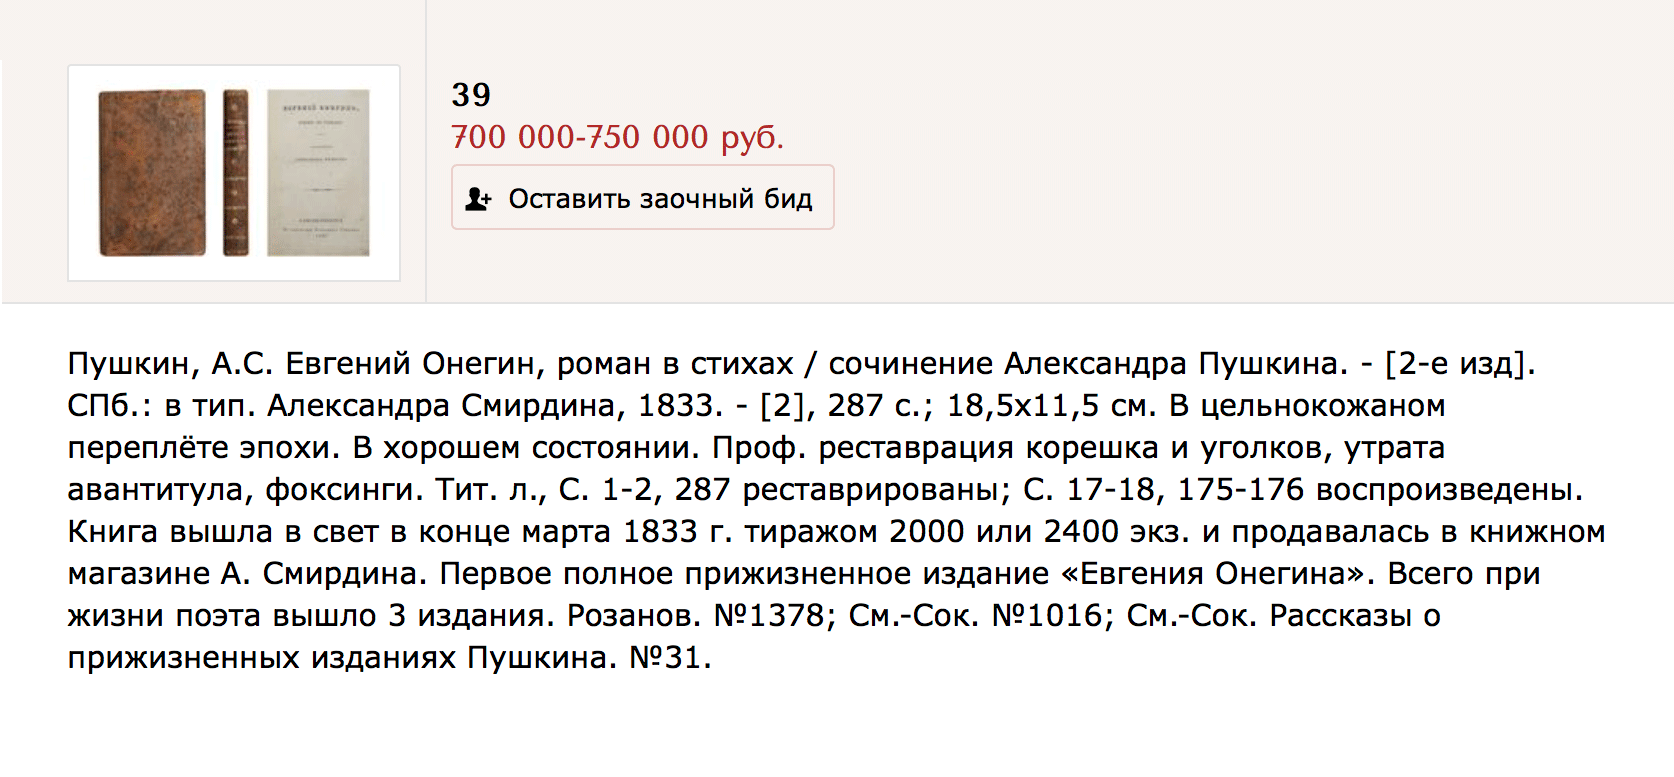 Стартовая цена второго издания «Евгения Онегина» на аукционе — 700 тысяч рублей